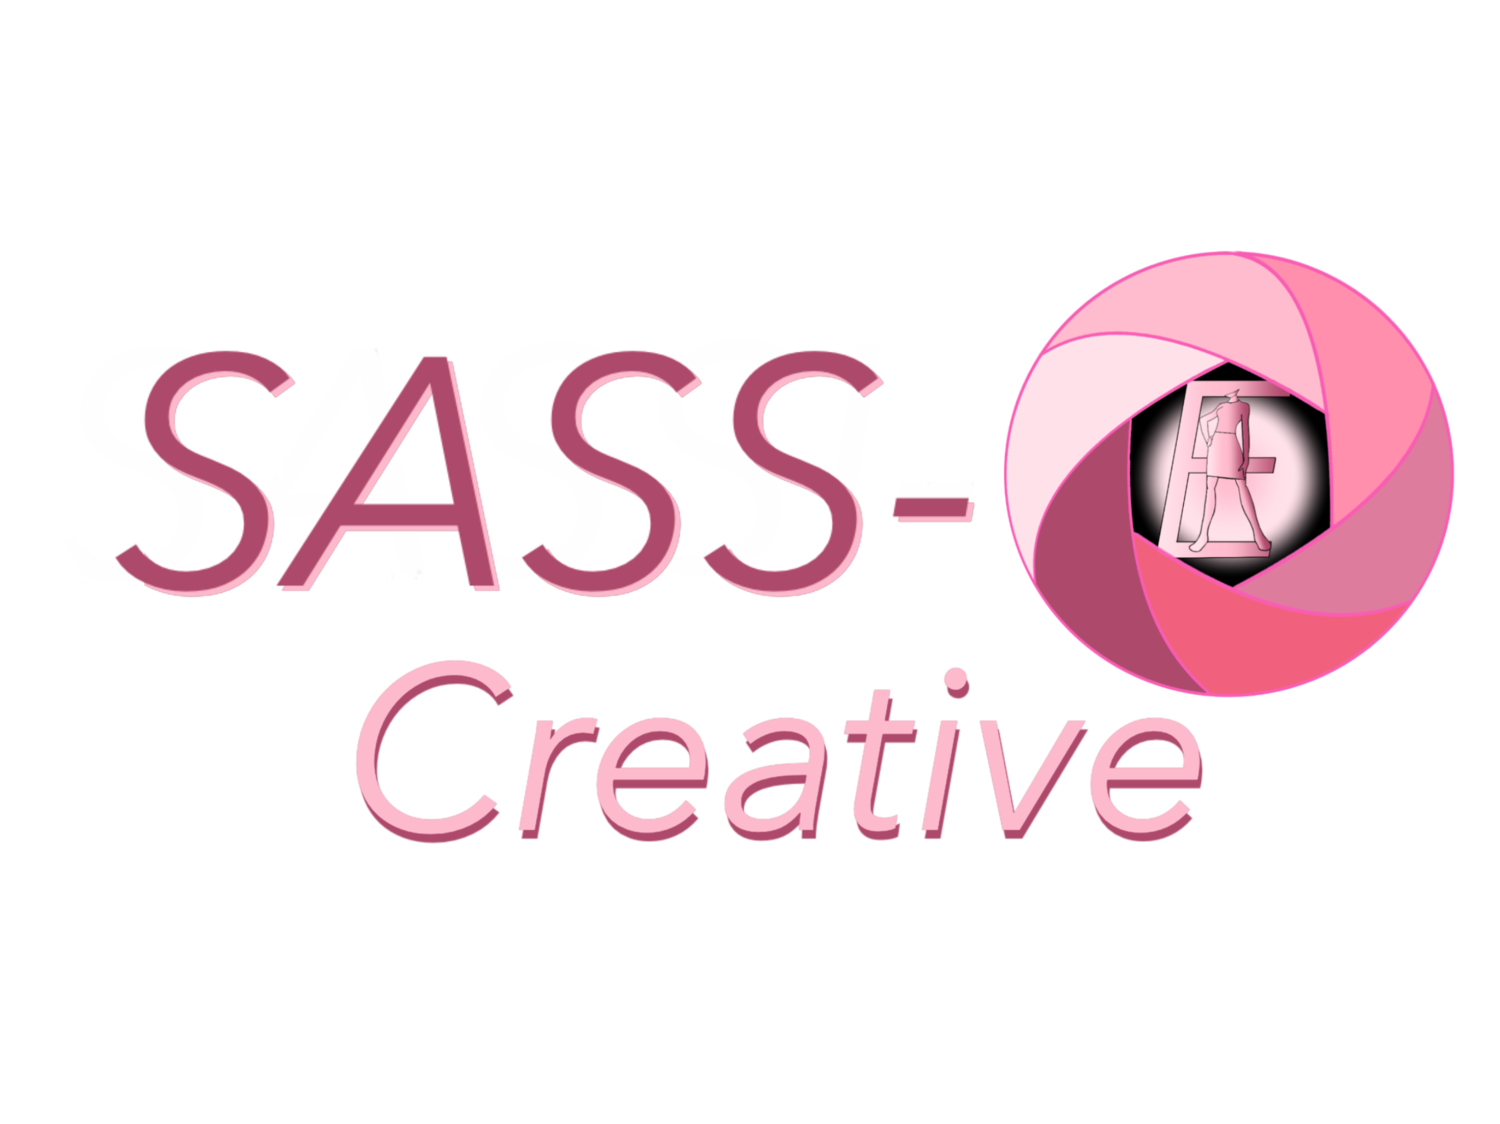 SASS-E CREATIVE